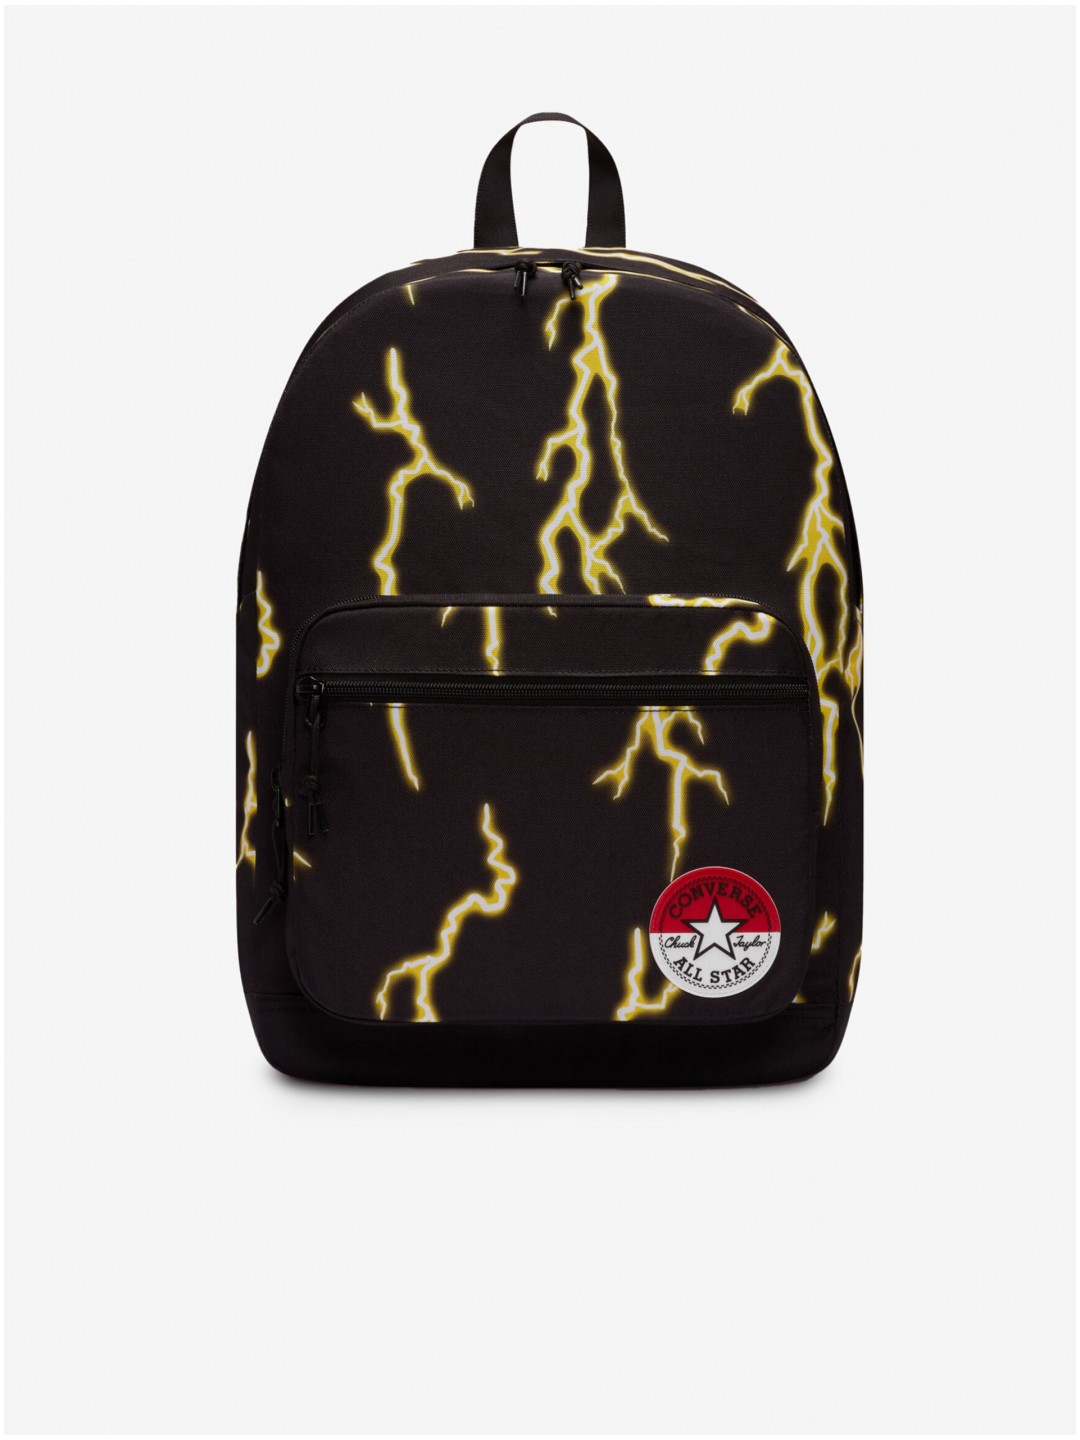 Černý vzorovaný batoh Converse x Pokémon Go 2 Pikachu